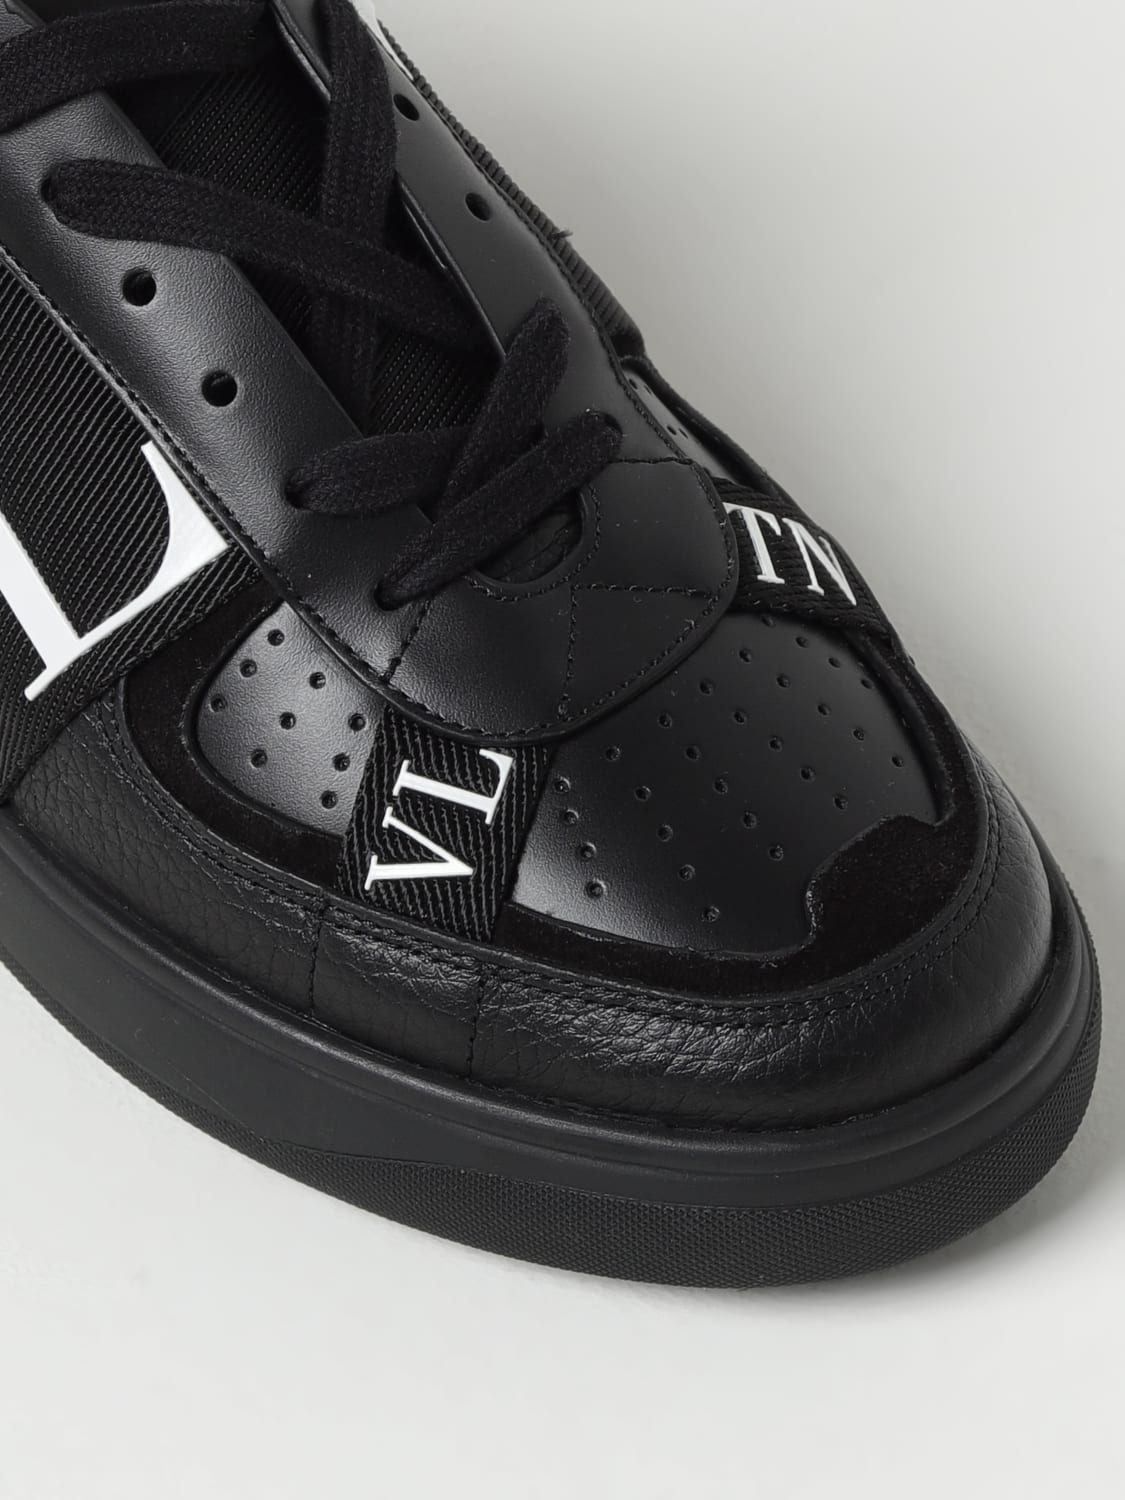 Valentino Garavani VL7N Sneaker Low Top Black White Black